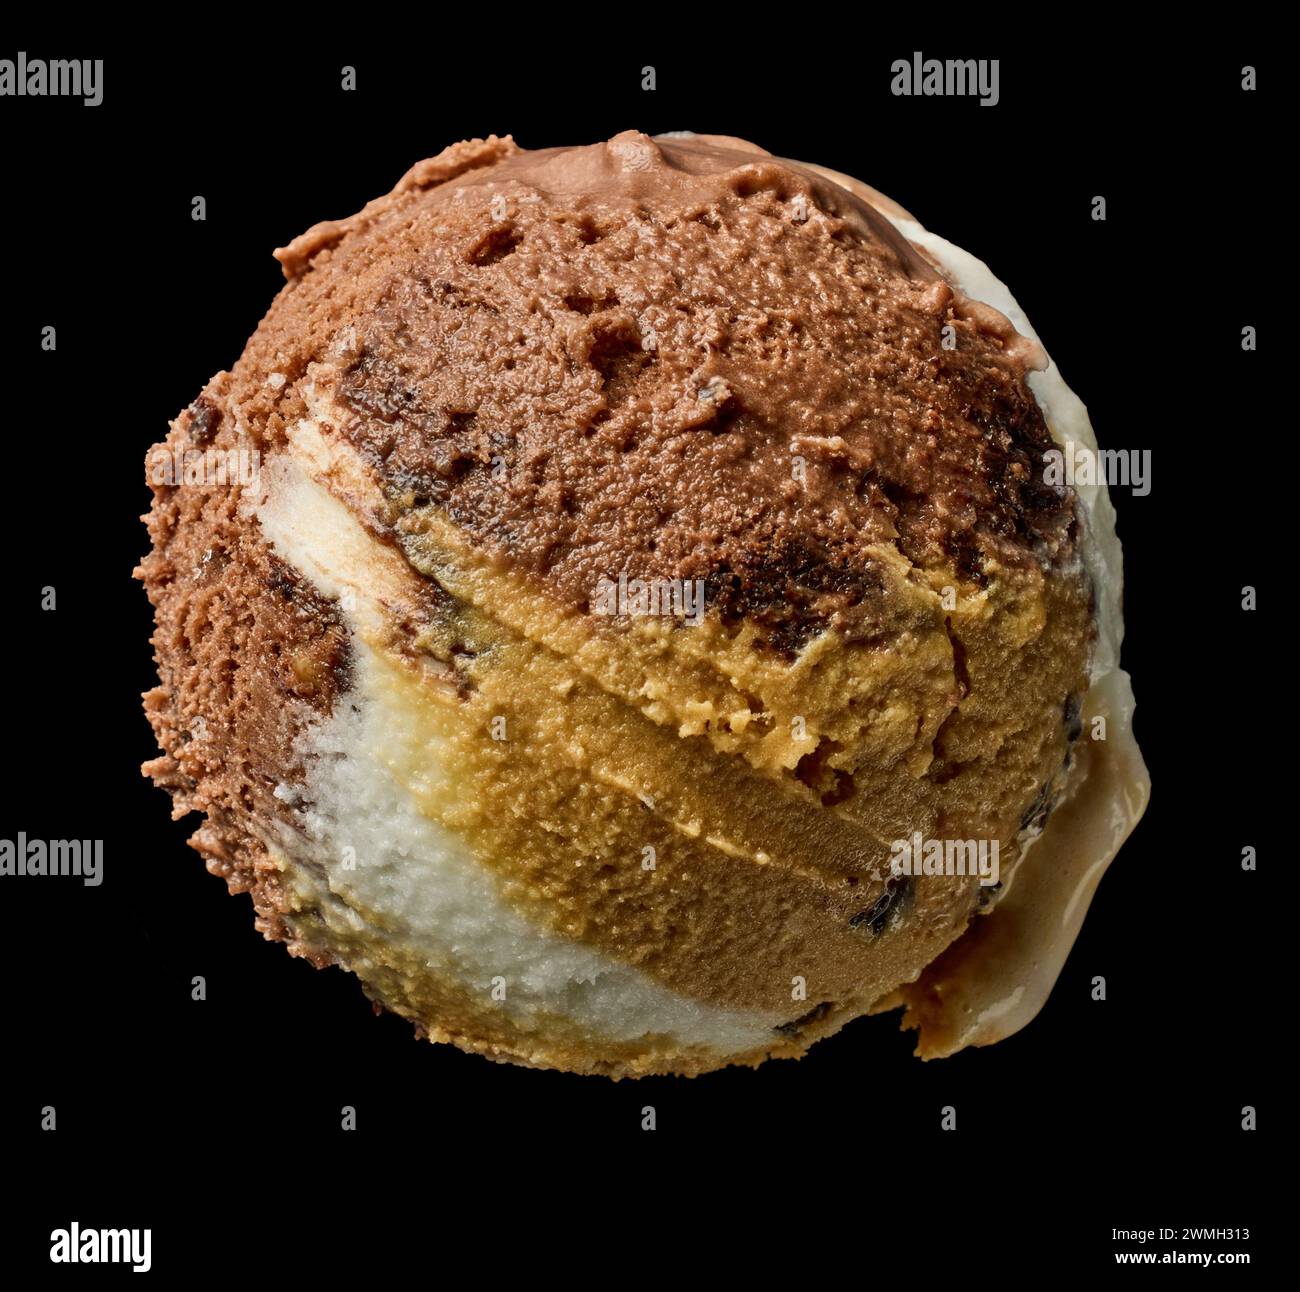 boule de glace au chocolat, au caramel et à la vanille isolée sur fond noir, vue de dessus Banque D'Images